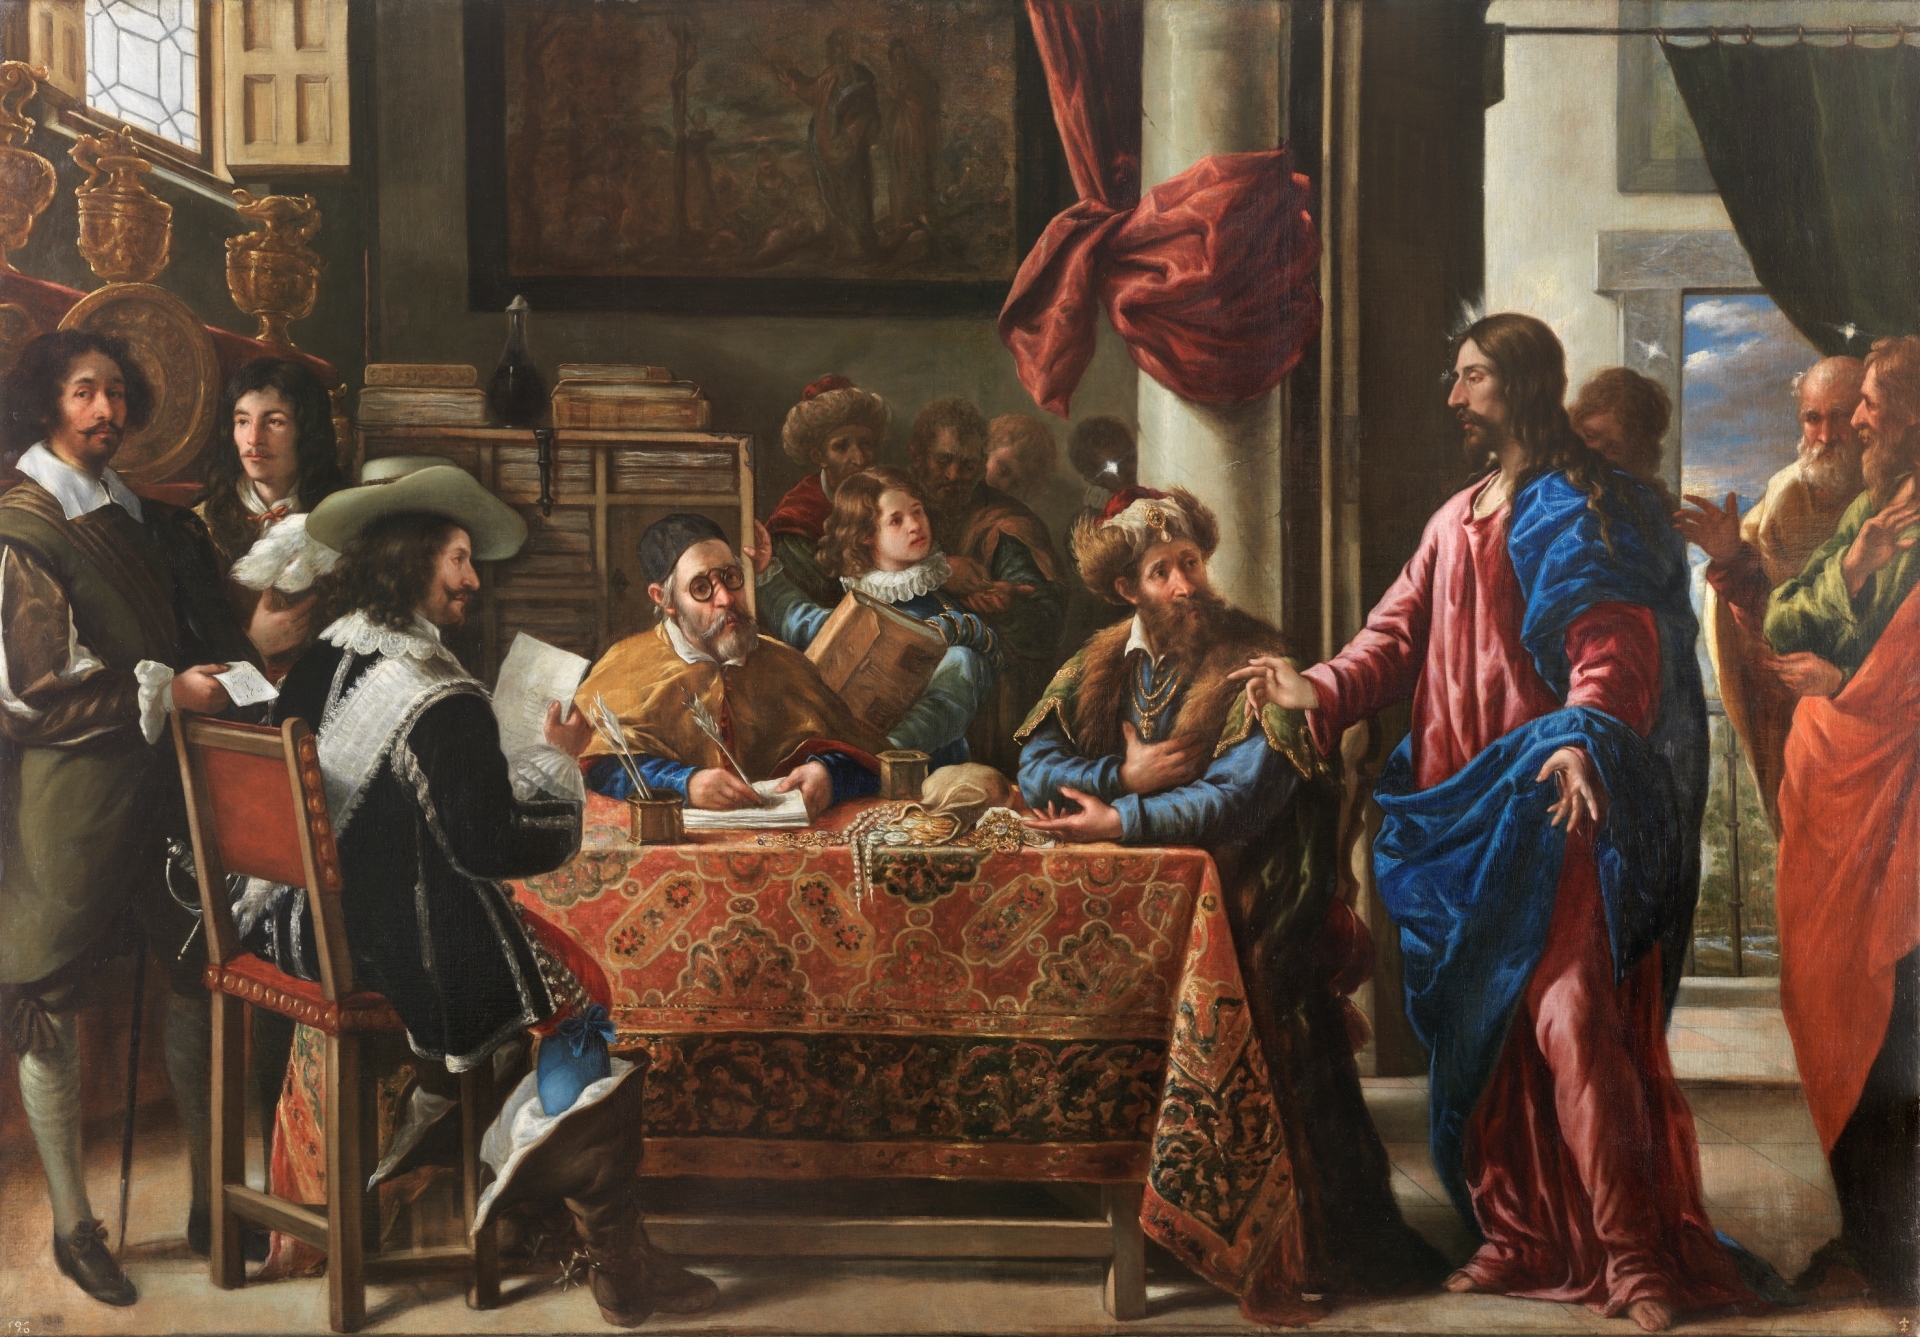 Juan de Pareja, The Calling of Saint Matthew, 1661, oil on canvas (Museo del Prado). Photo: Museo del Prado, publicaciones sin fines de lucro, sitios web personales, blogs y medios sociales